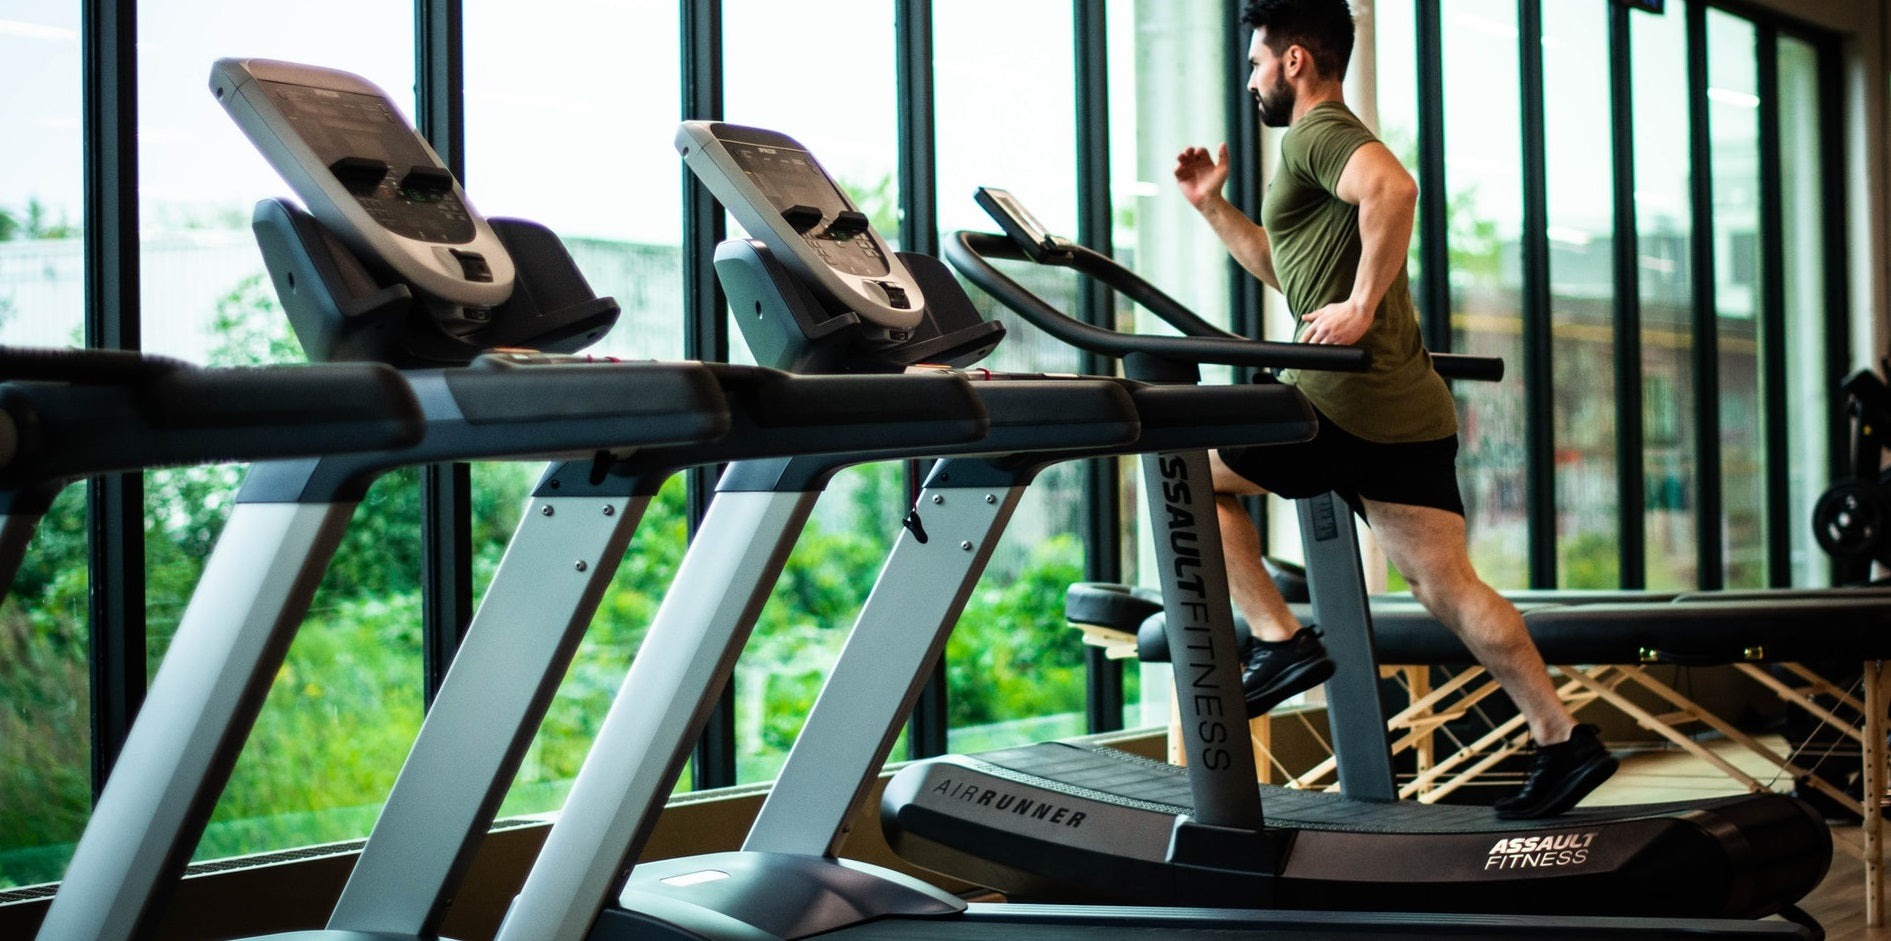 Treadmills Training in Gym